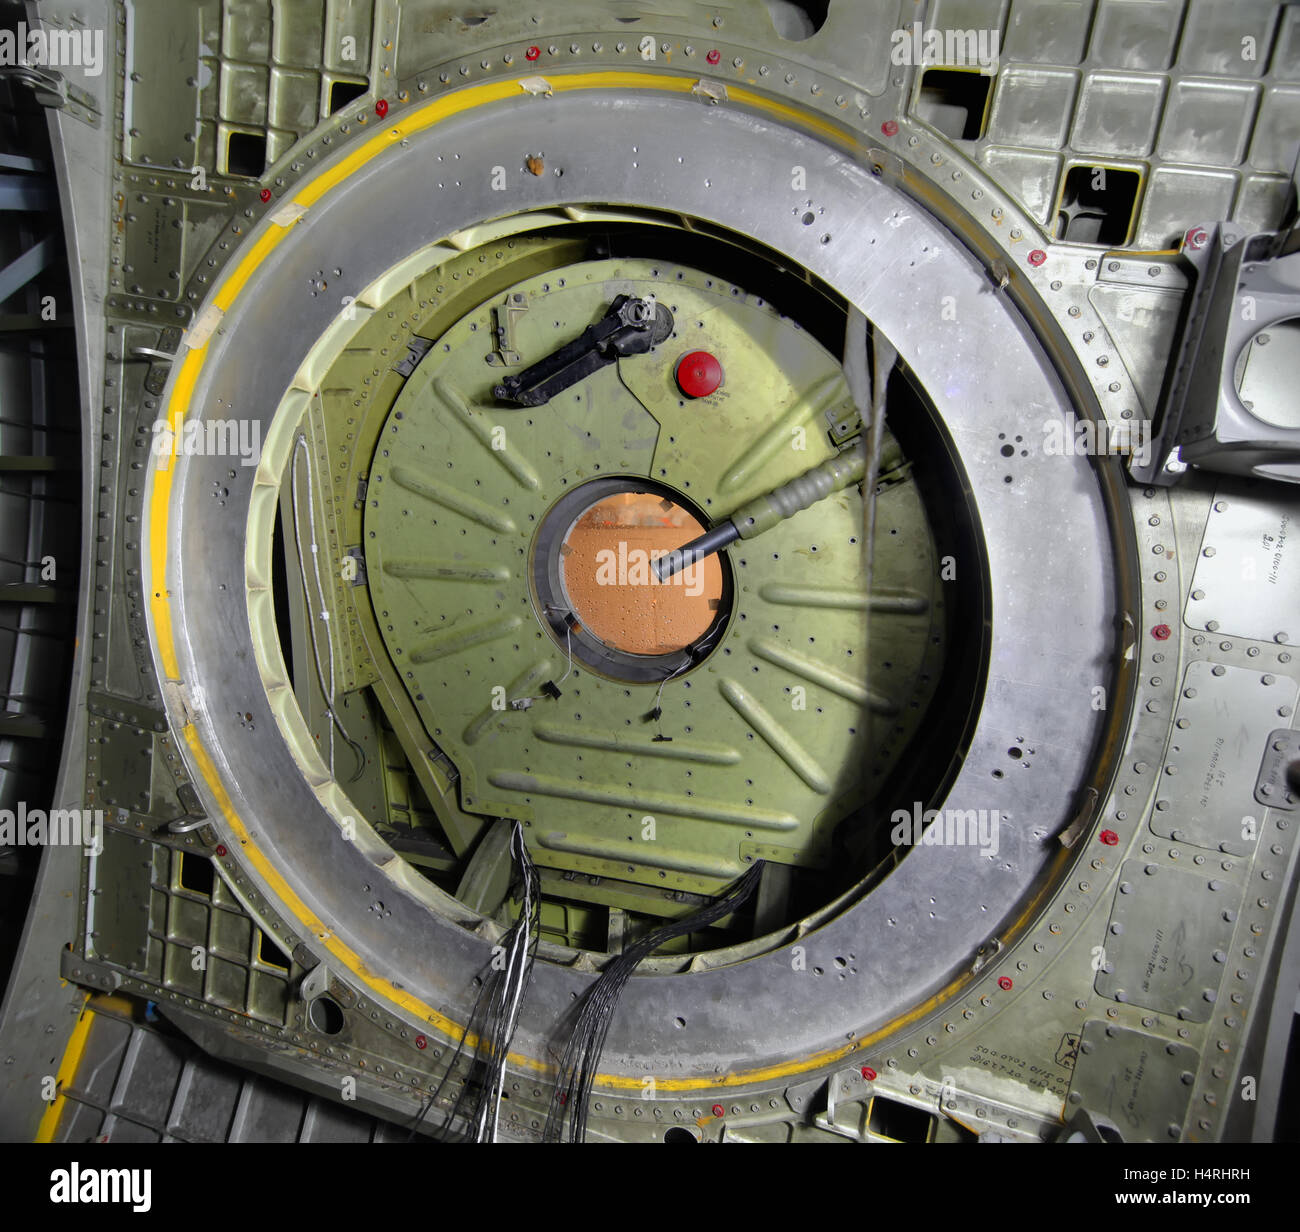 Chiusura ermetica della navetta spaziale Buran. Vista interna Foto Stock